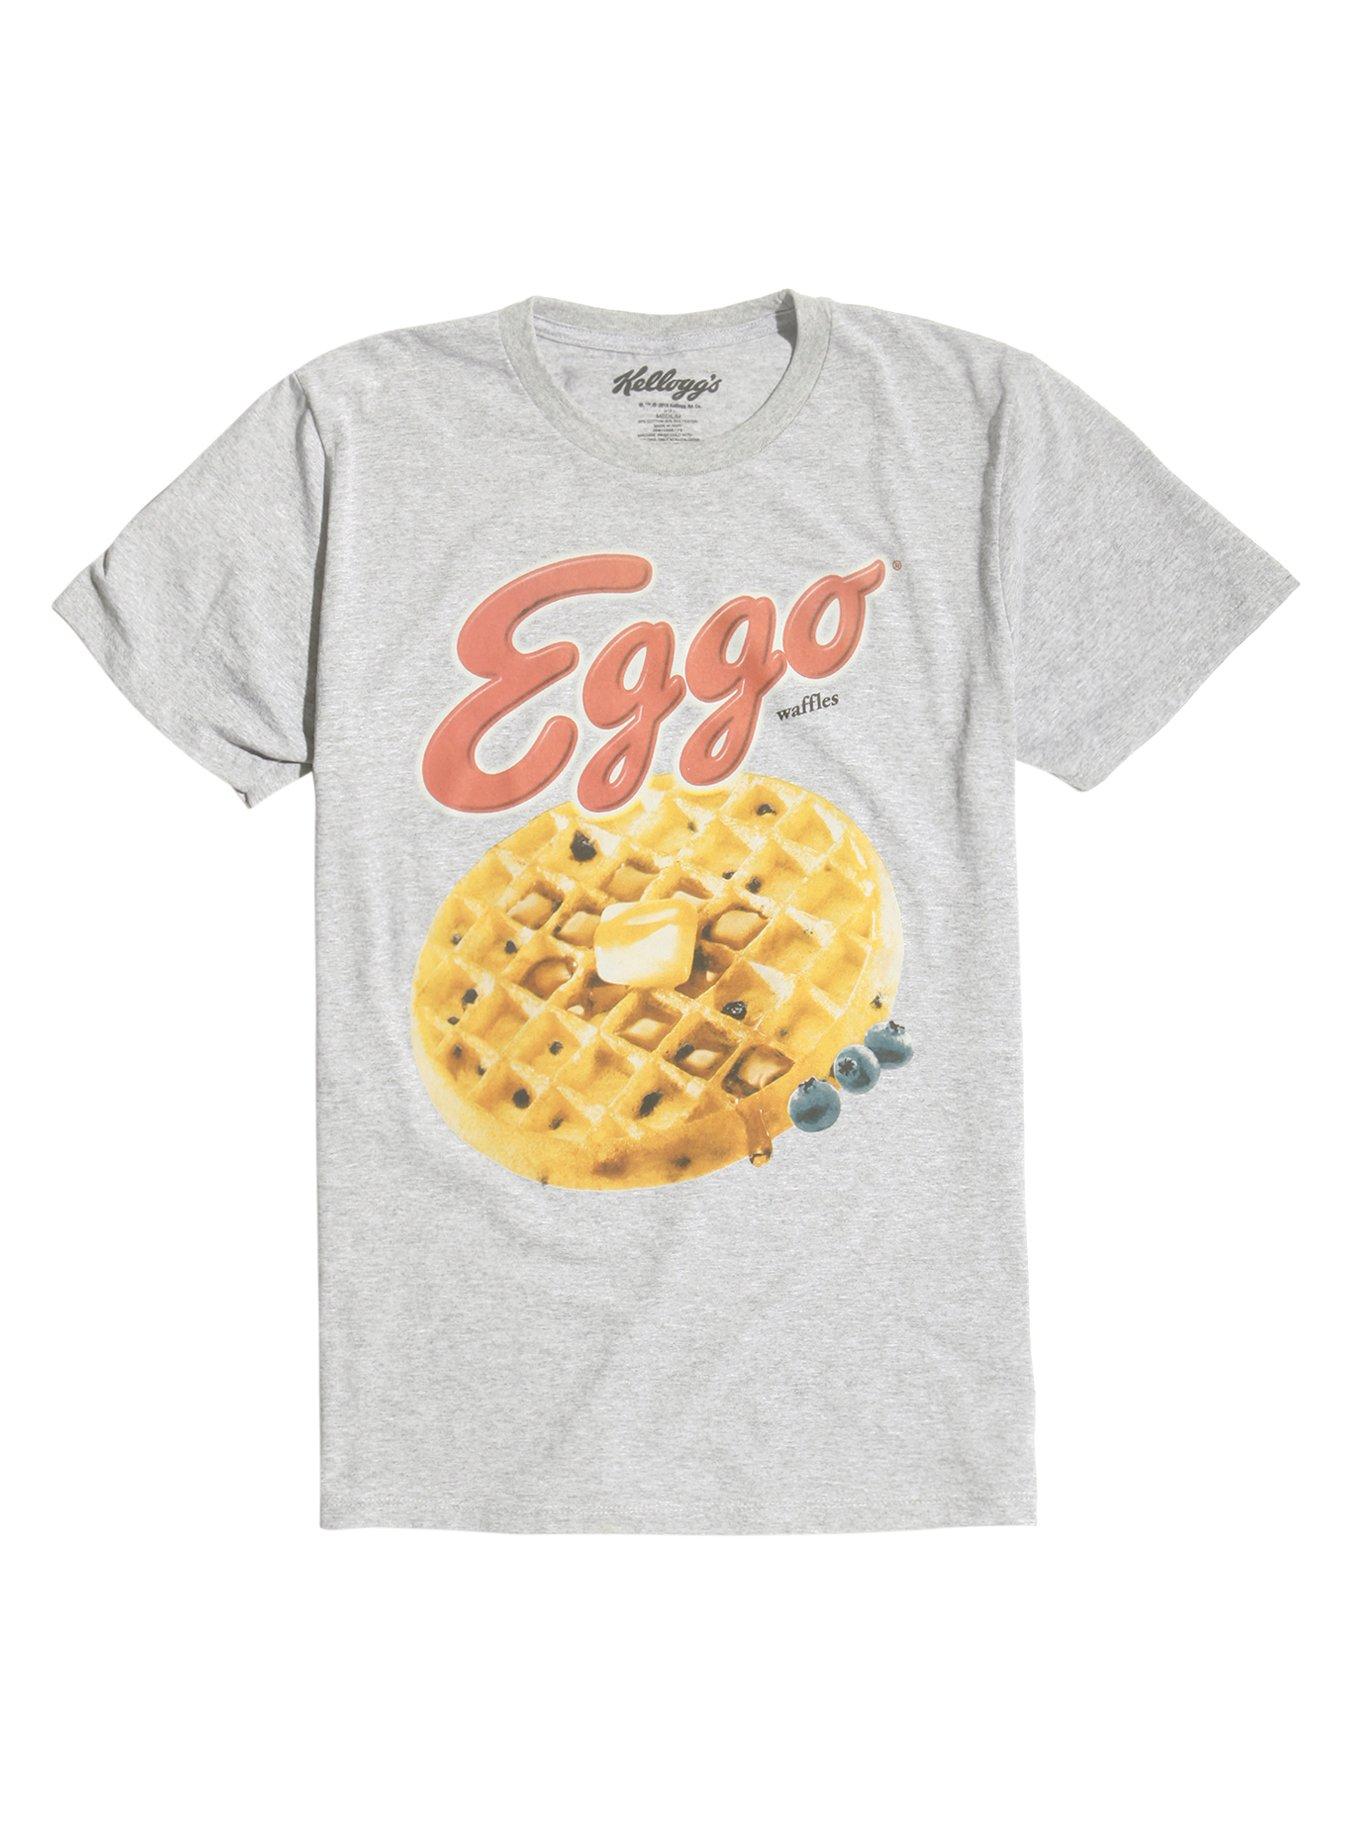 Eggo Waffle T-Shirt, GREY, hi-res